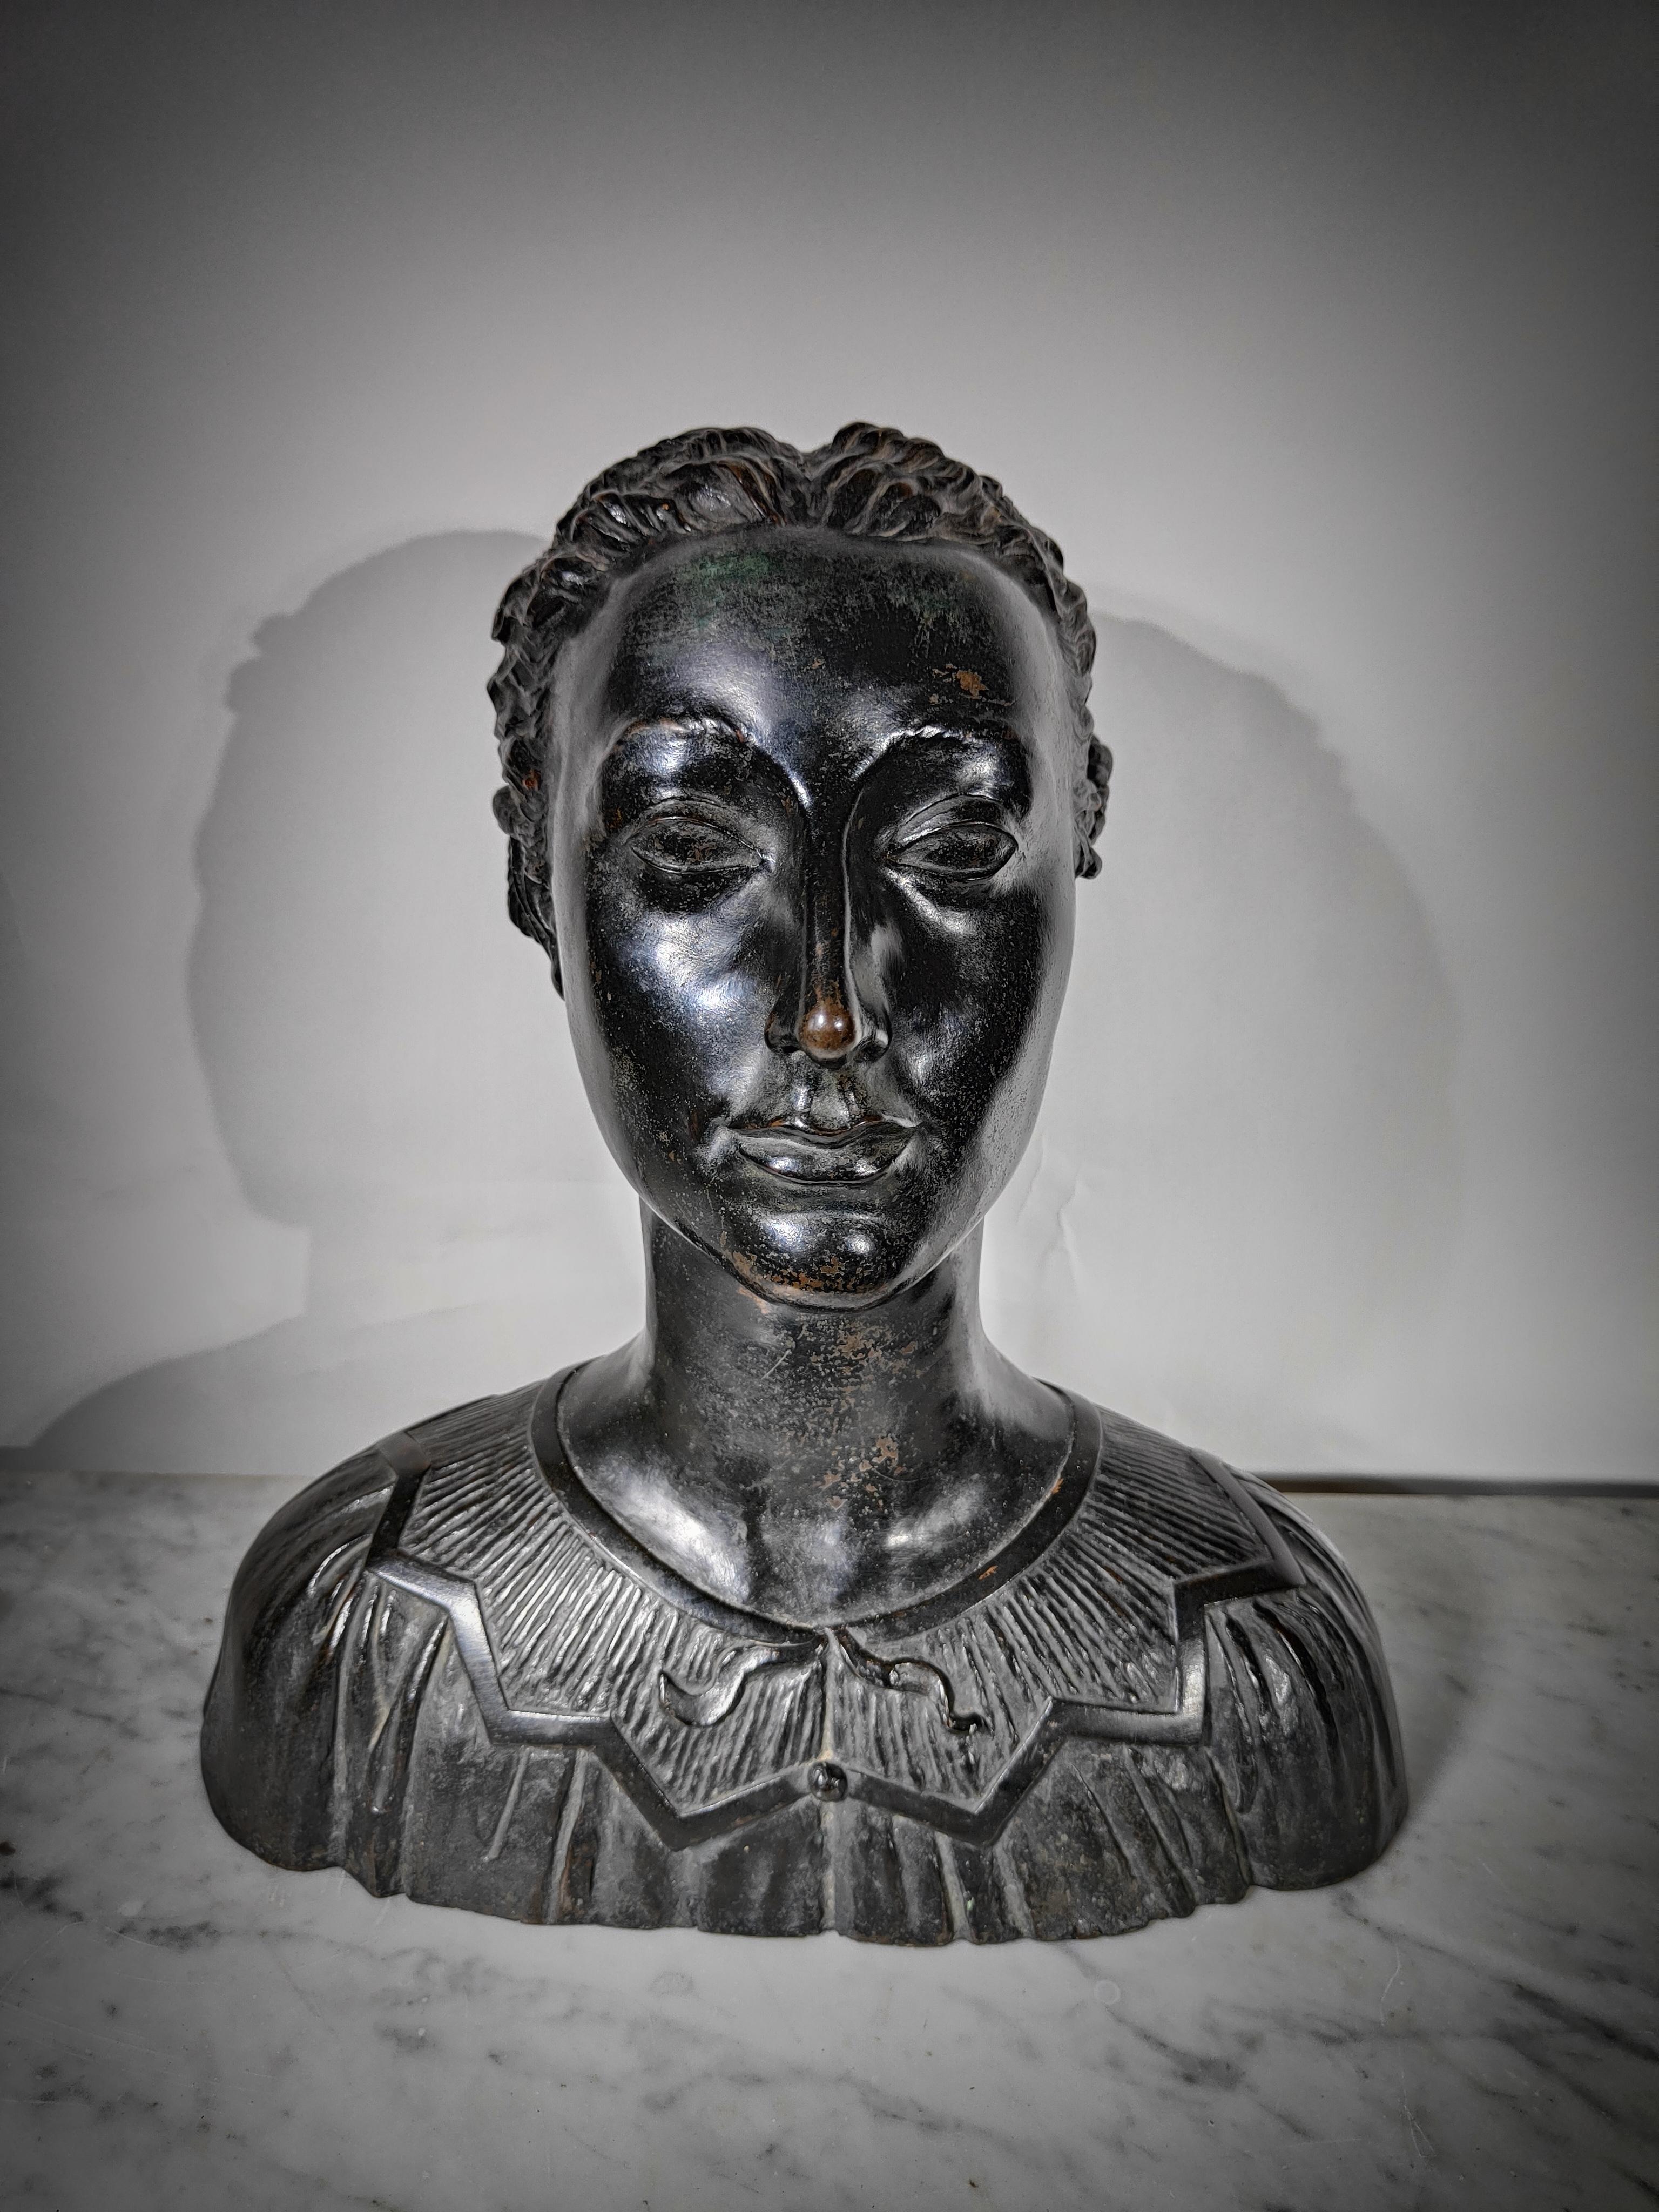 Sehr seltene Büste des italienischen Bildhauers Enrico Parnigotto.
Die Büste stellt eine Frau mit hochgesteckten Haaren dar, die an ihren eigenen ursprünglichen Stil vom Anfang des 20. Jahrhunderts erinnert. (DENKEN SIE AN EINEN HAUCH VON